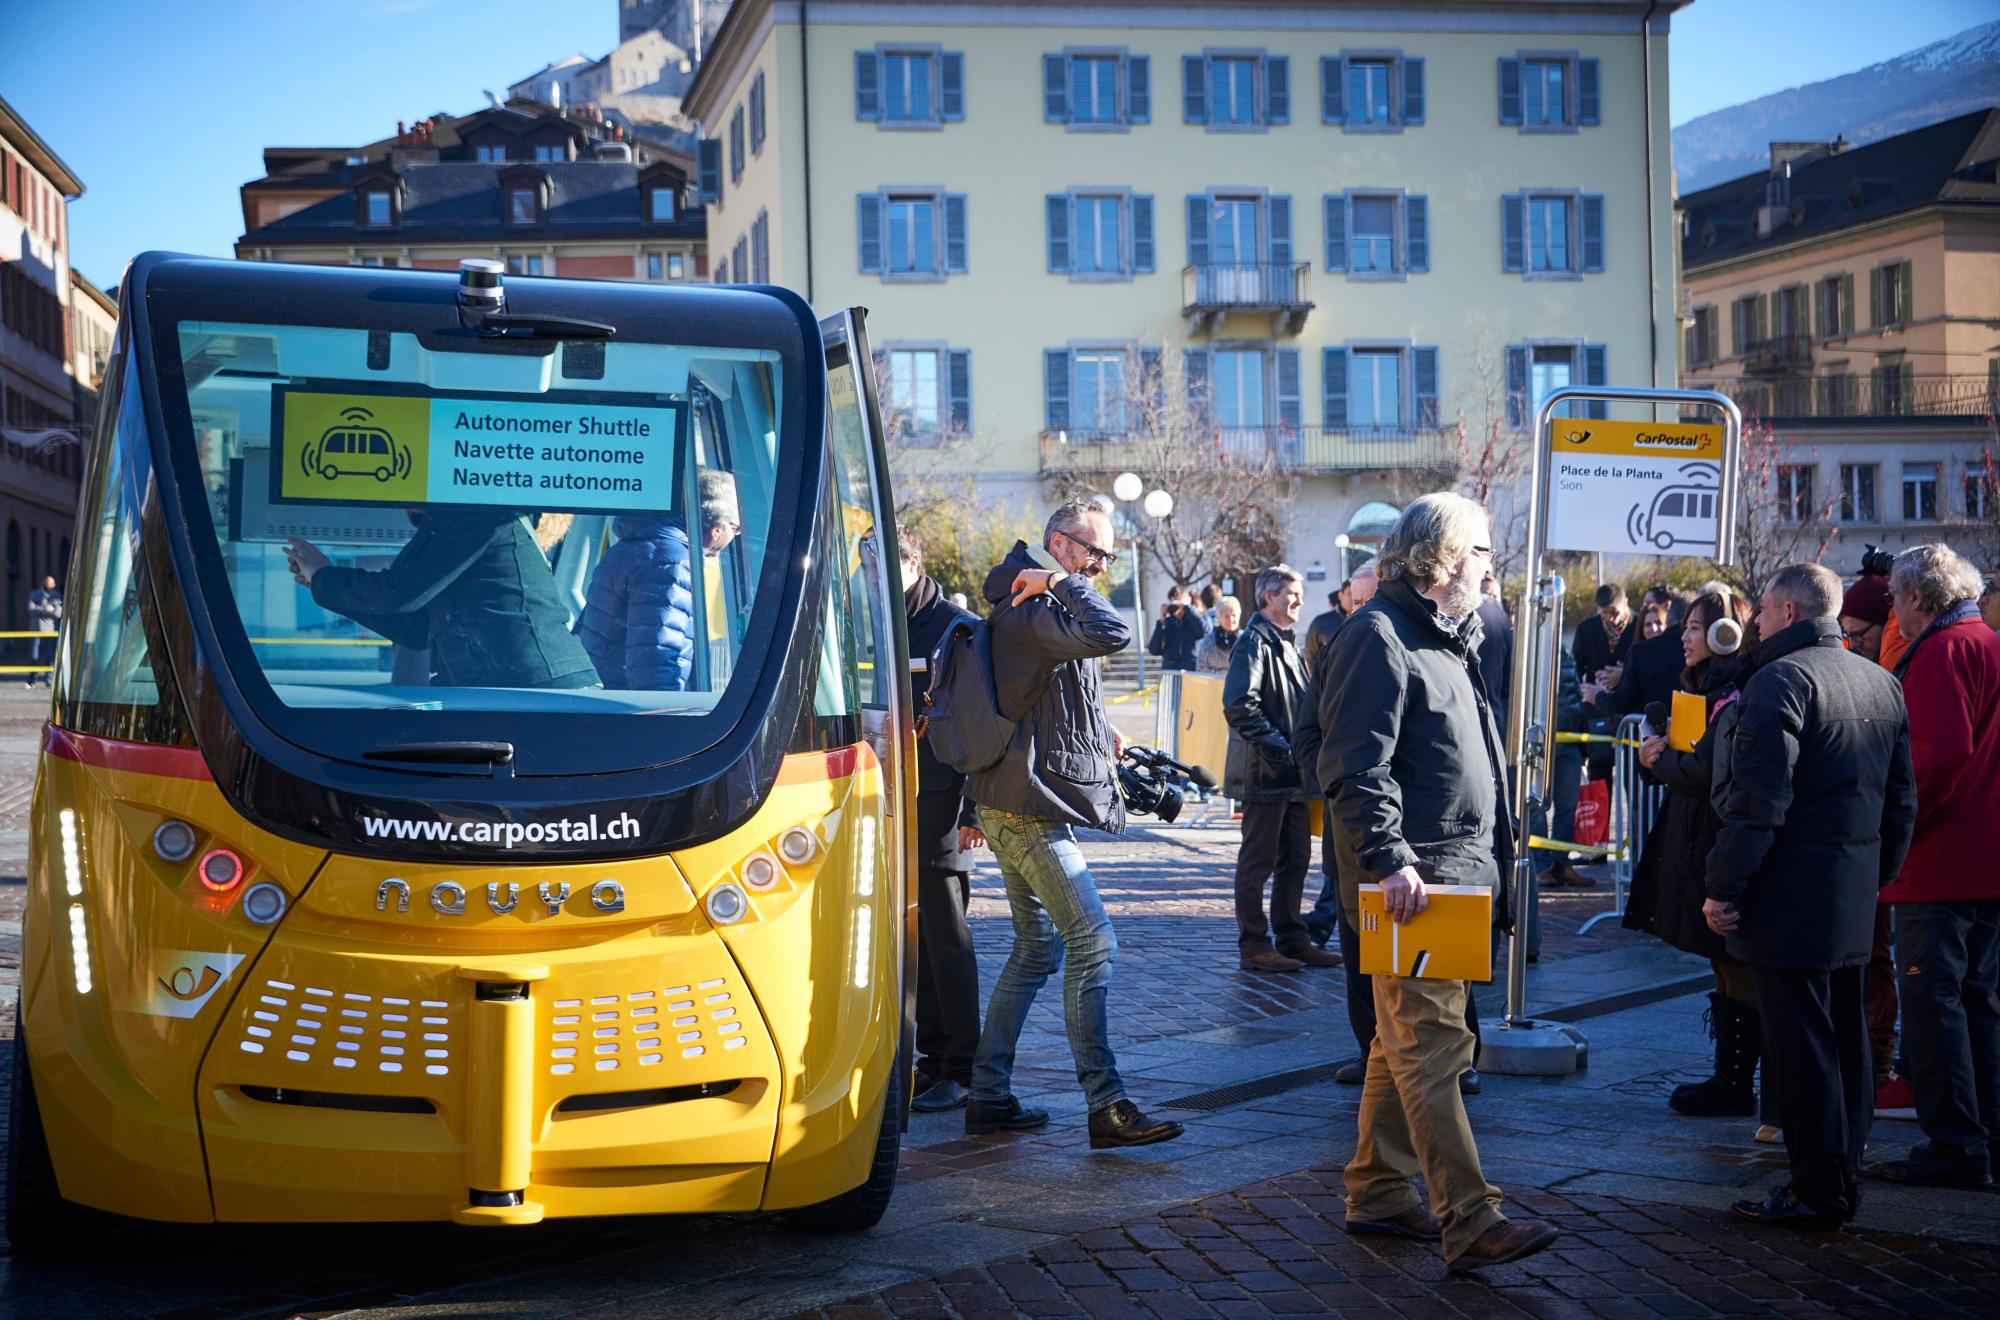 Dos pequeños autobuses sin conductor, de 4,80 metros de largo y 2,05 metros de ancho, para nueve personas de pie, comenzarán a circular y transportar pasajeros el segundo semestre del año en Sion